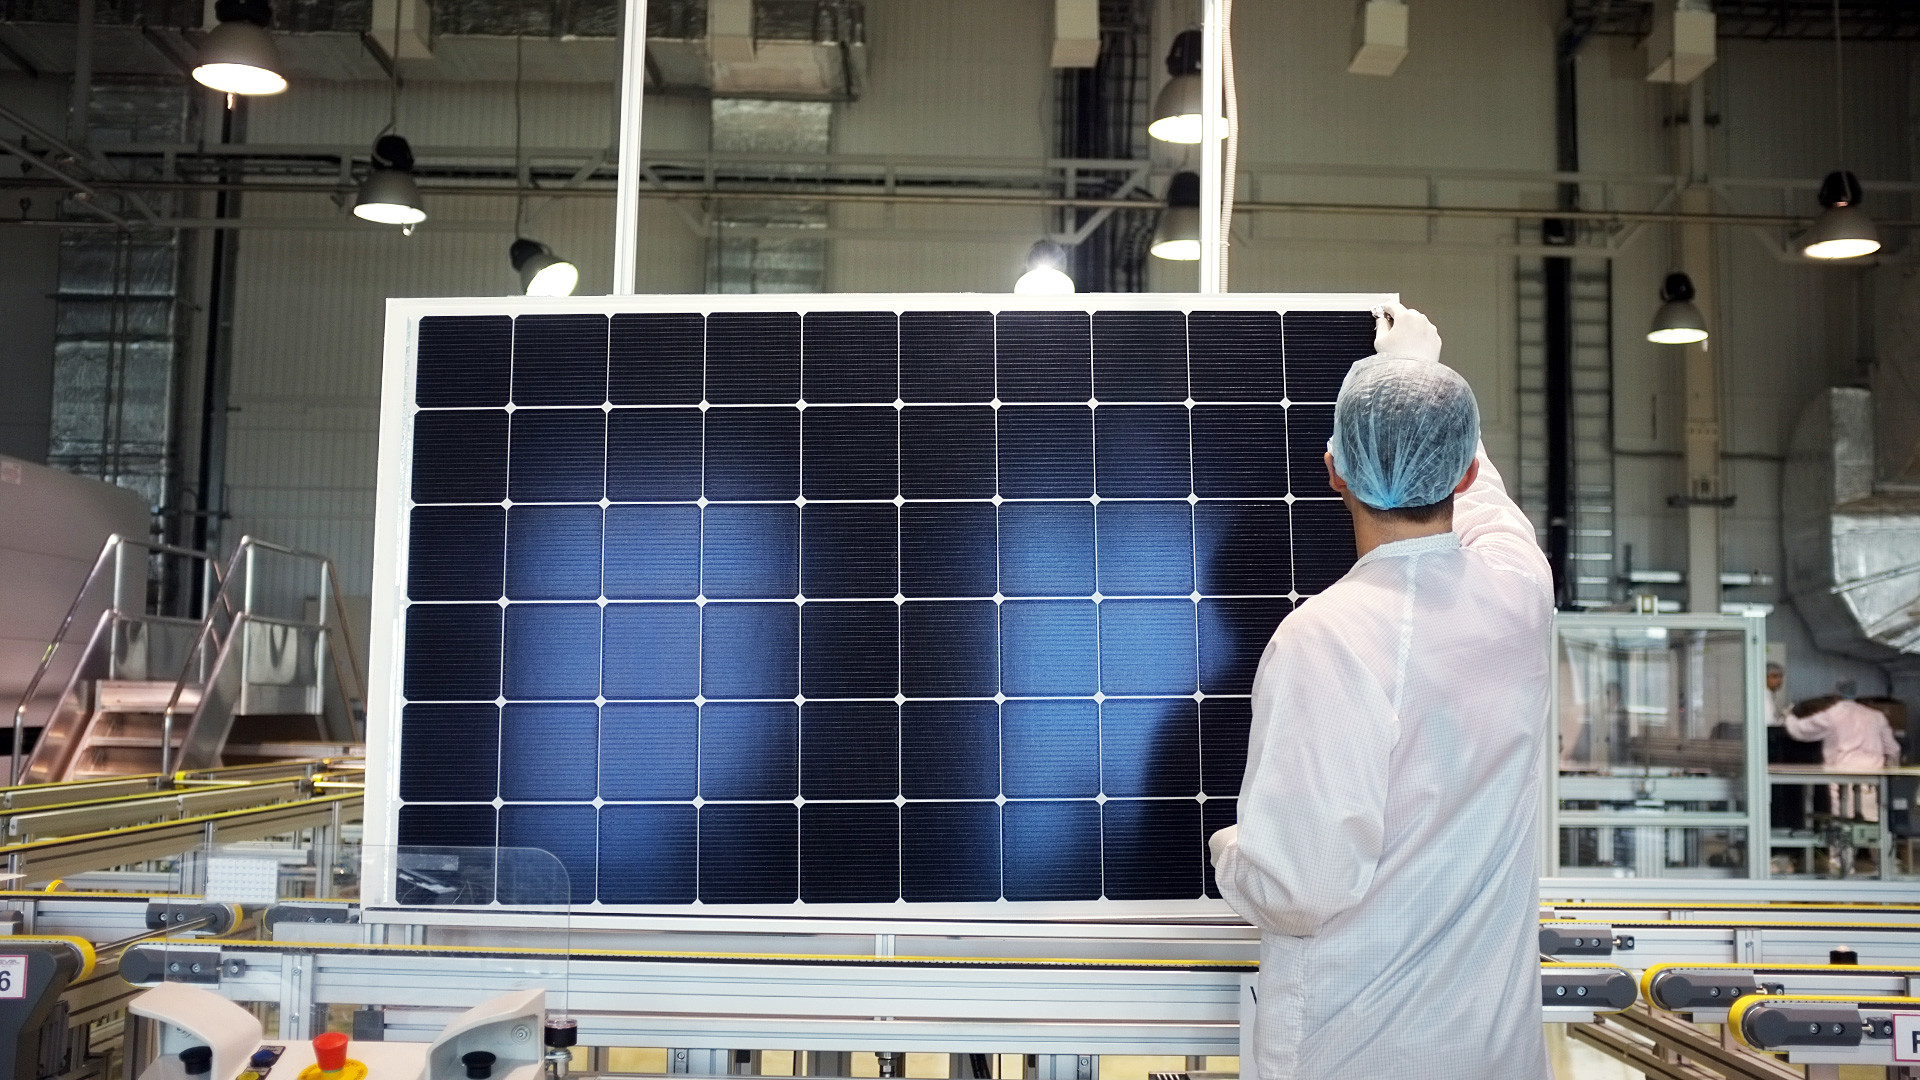 太陽光発電モジュール生産で世界第3位 - ロシア・ビヨンド